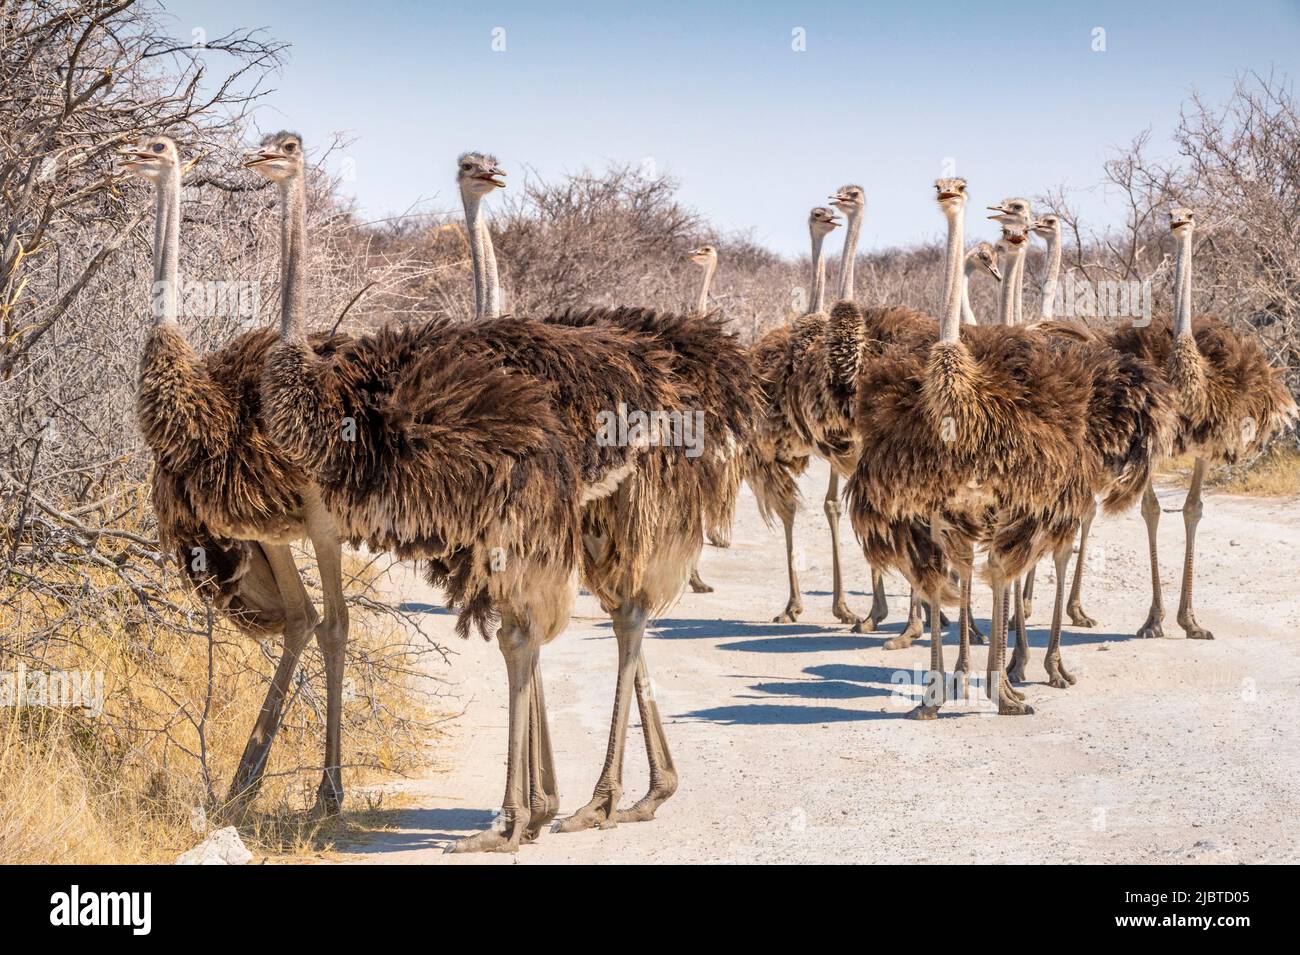 Namibie, région de Kunene, Parc national d'Etosha, bassin d'eau Klein Okevi, Ostrich africain (Struthio camelus) sur la piste Banque D'Images